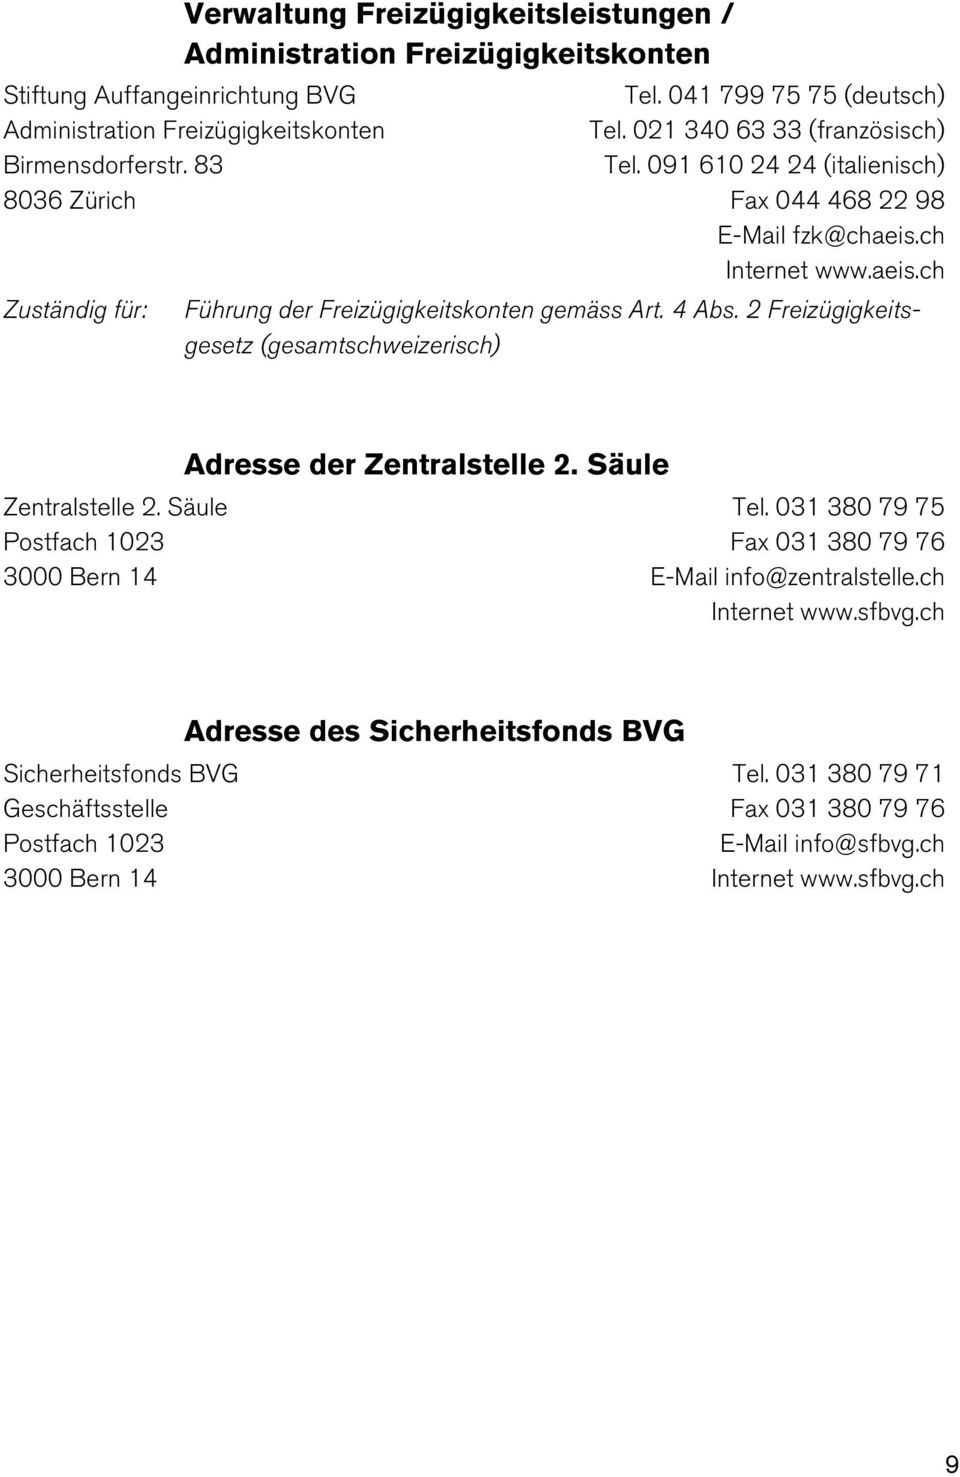 4 Abs. 2 Freizügigkeitsgesetz (gesamtschweizerisch) Zentralstelle 2. Säule Postfach 1023 3000 Bern 14 Adresse der Zentralstelle 2. Säule Tel.